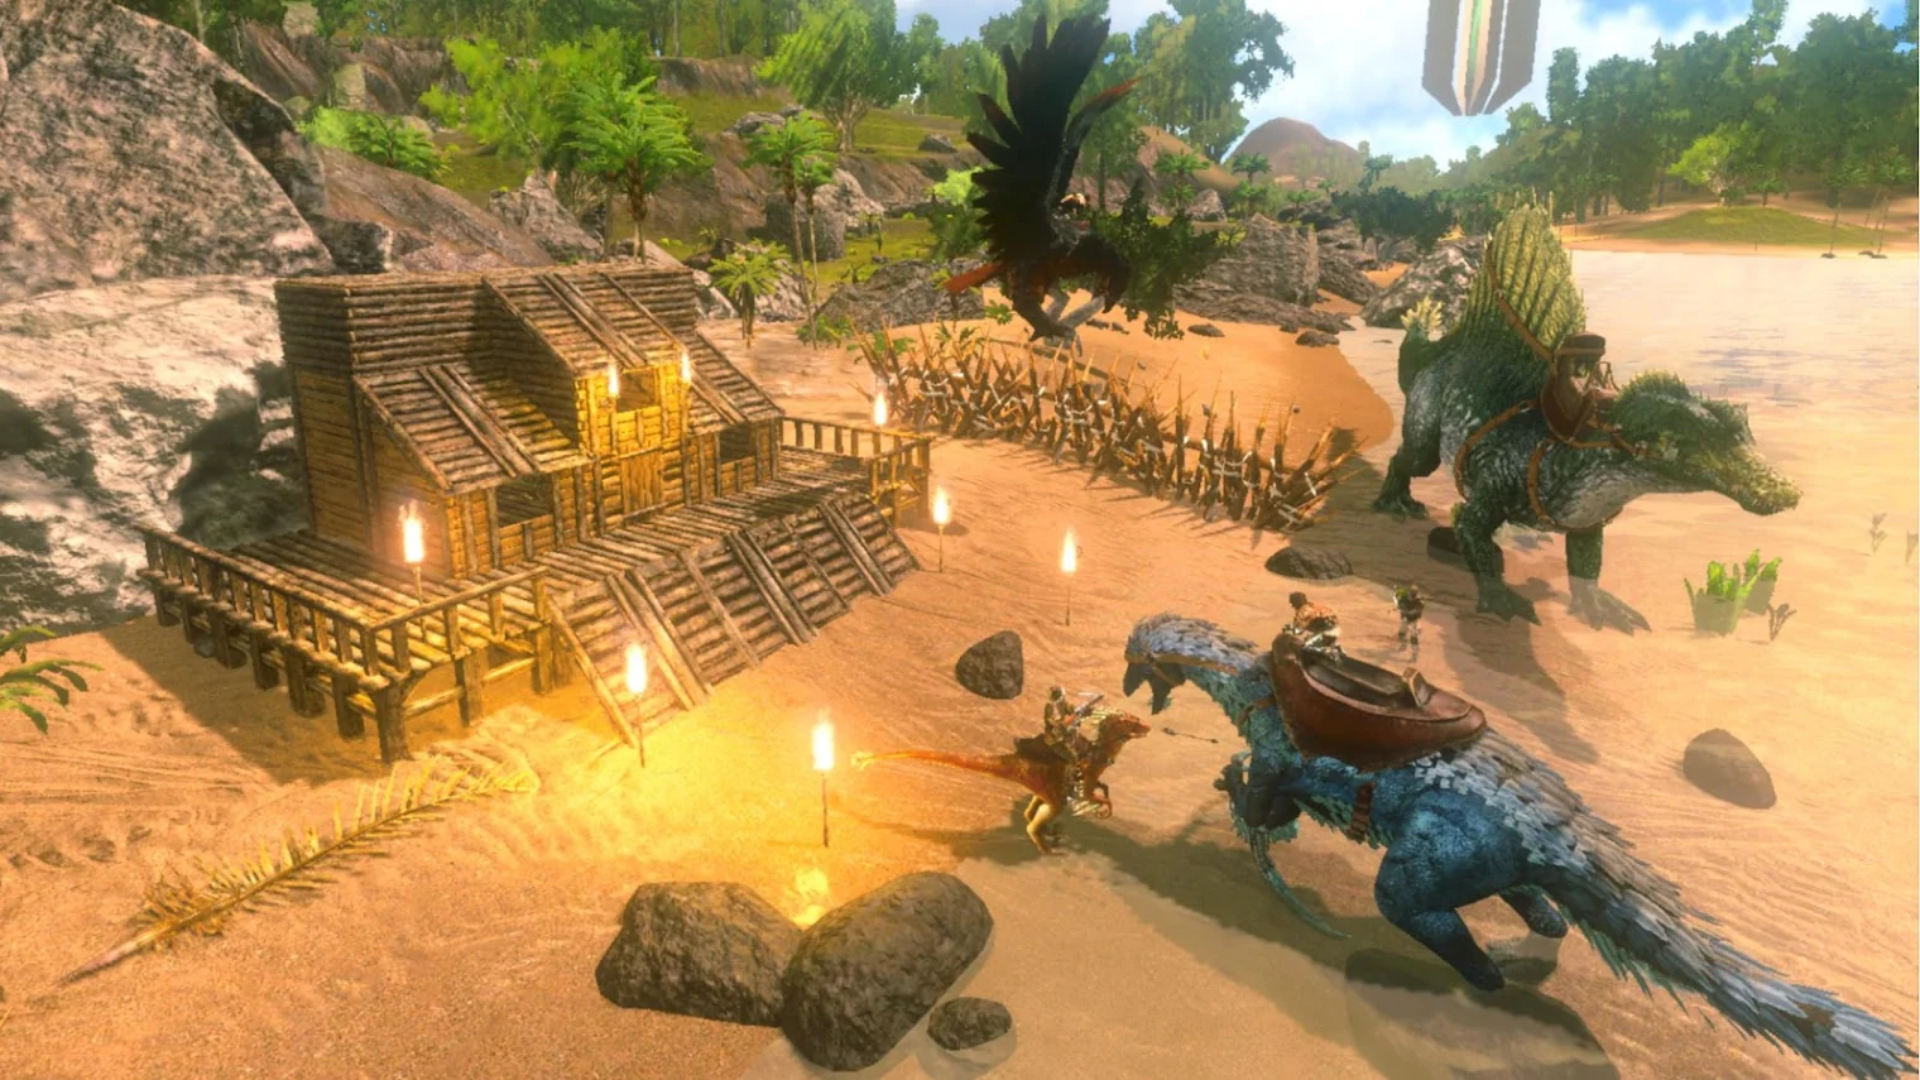 Meilleurs Jeux De Survie Sur Mobile : Ark : Survival Evolved.  L'image Montre Un Dinosaure Près D'une Maison En Construction.